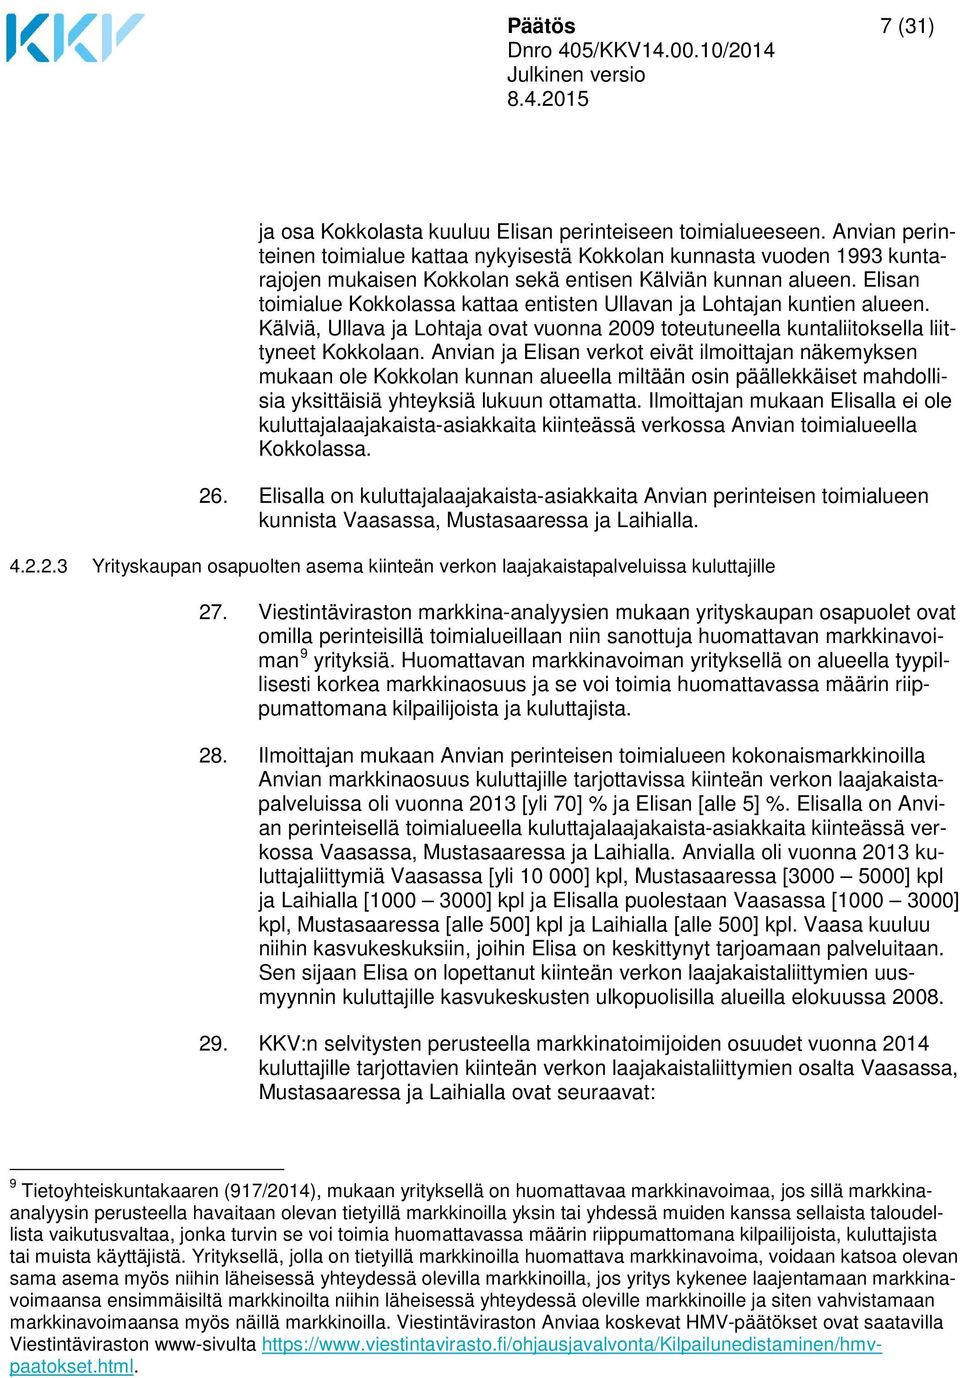 Elisan toimialue Kokkolassa kattaa entisten Ullavan ja Lohtajan kuntien alueen. Kälviä, Ullava ja Lohtaja ovat vuonna 2009 toteutuneella kuntaliitoksella liittyneet Kokkolaan.